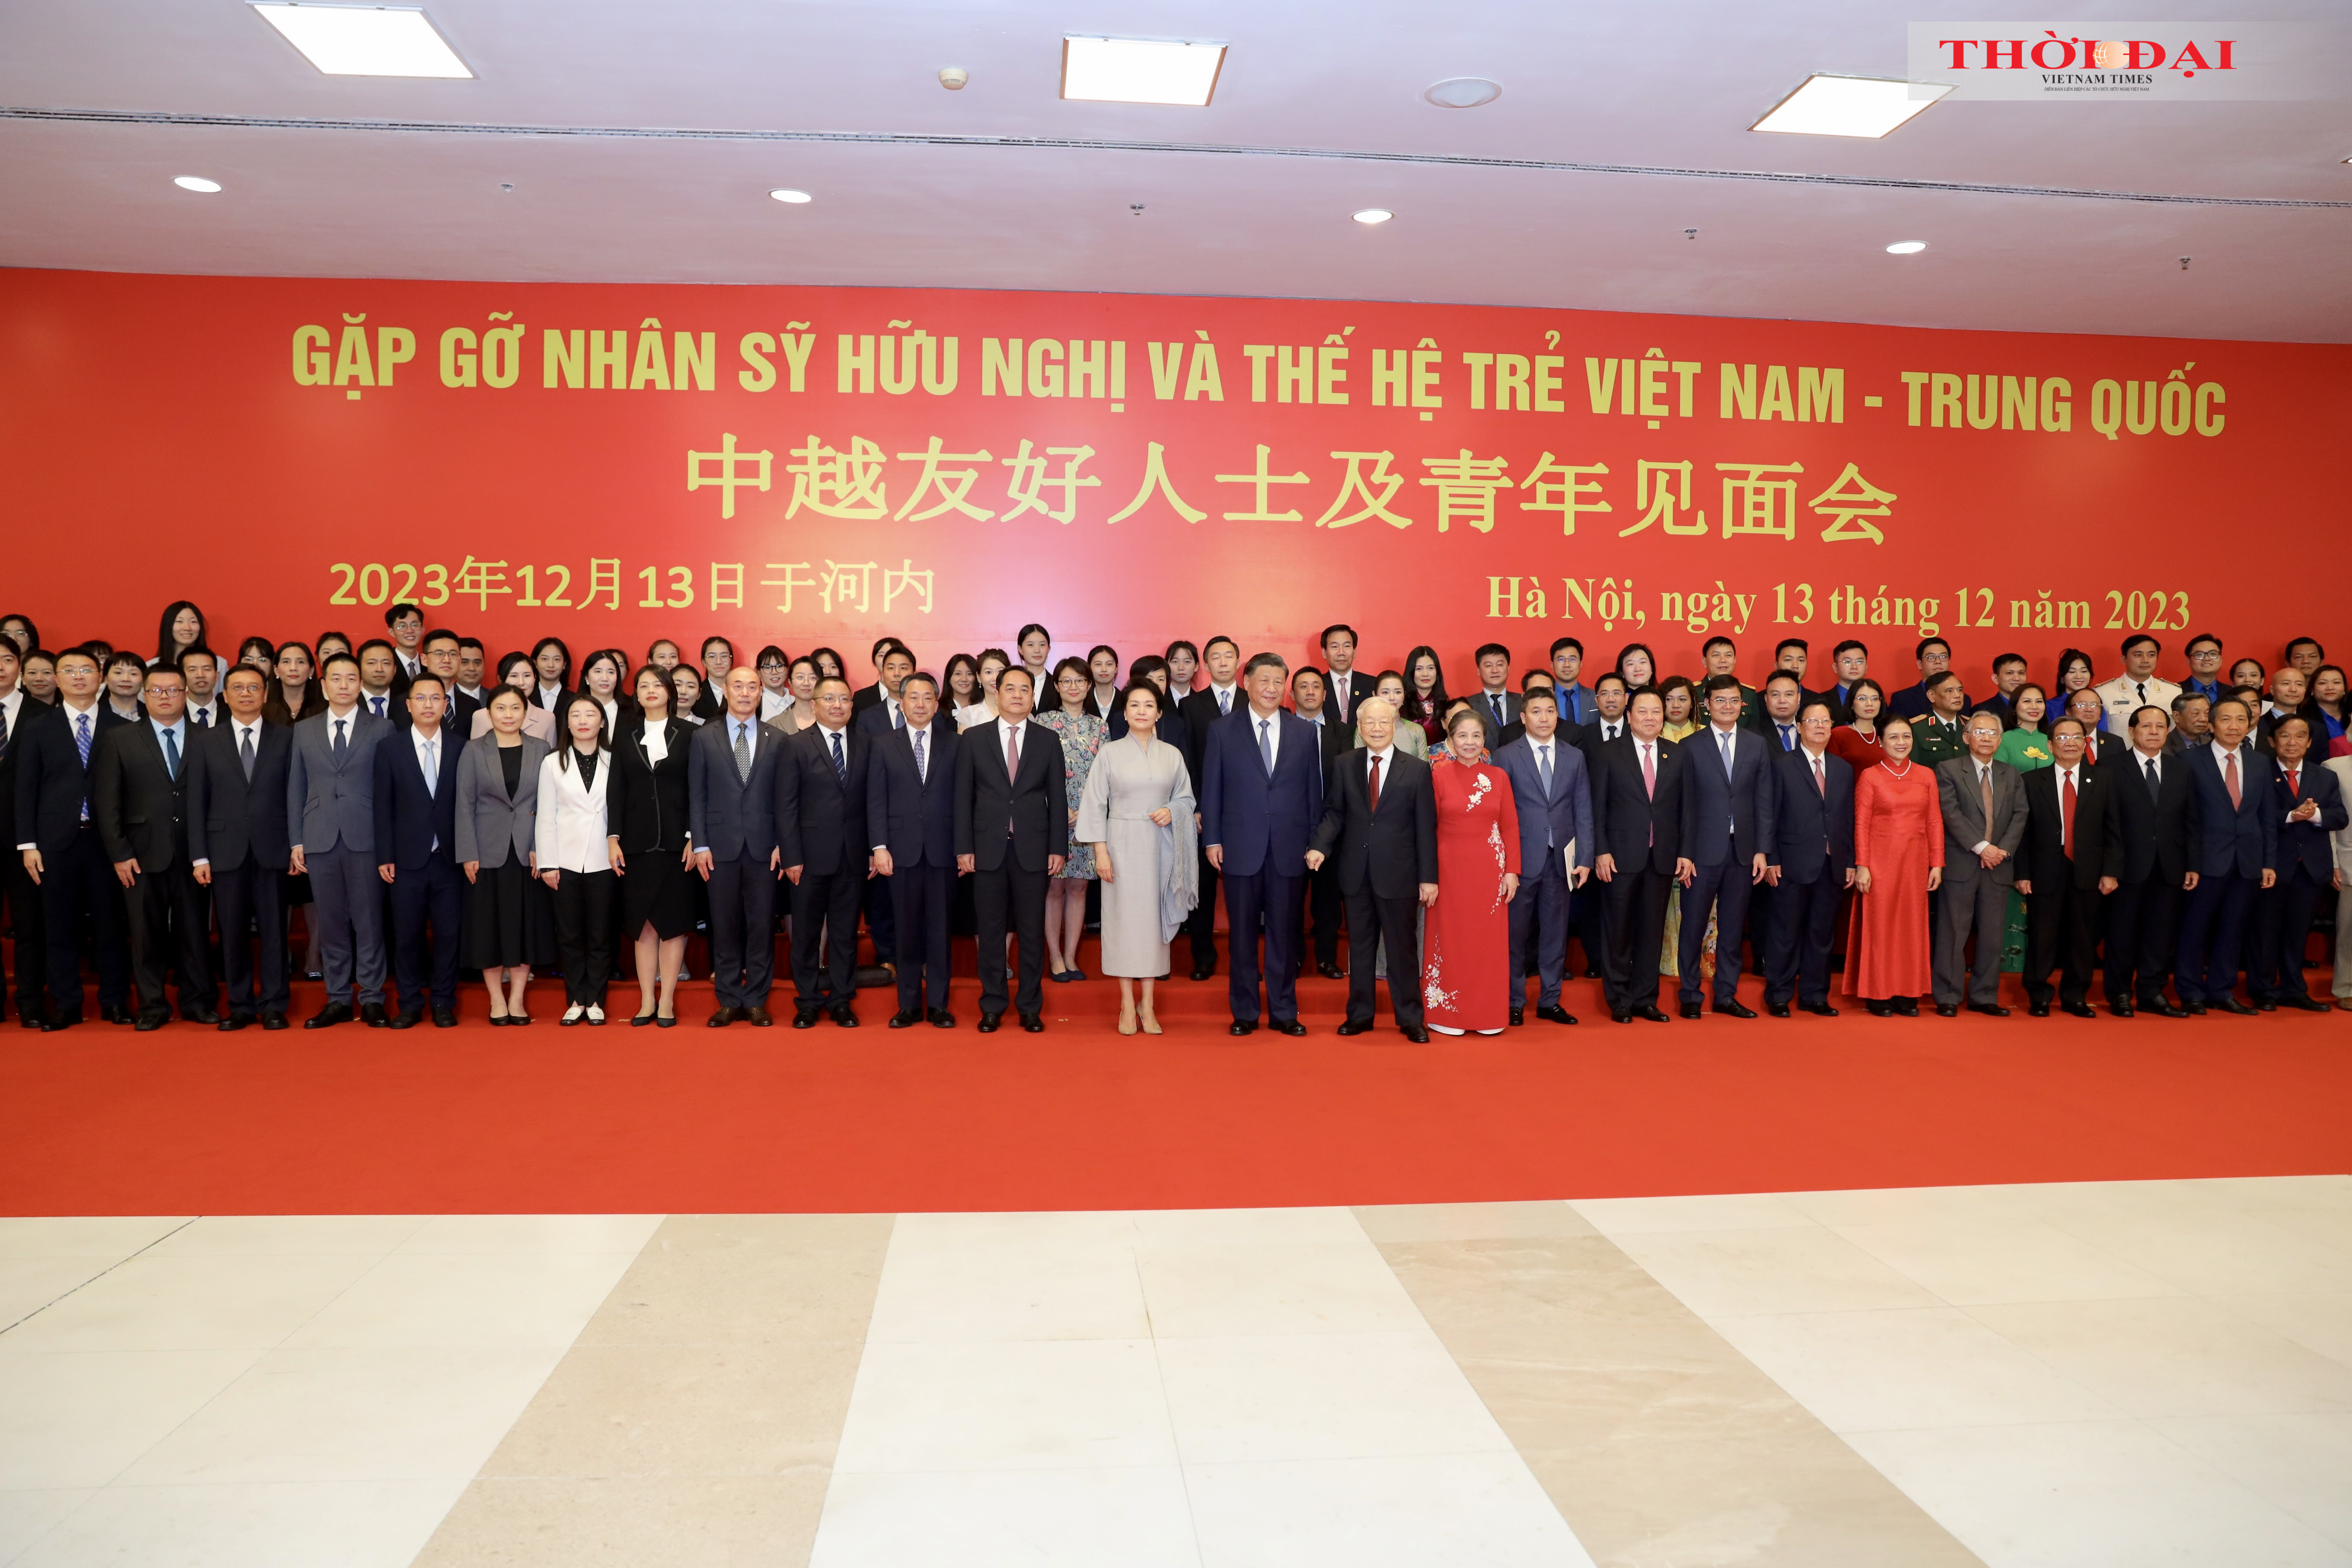 Tổng Bí thư Nguyễn Phú Trọng và Phu nhân cùng Tổng Bí thư, Chủ tịch nước Trung Quốc Tập Cận Bình và Phu nhân chụp ảnh chung với các nhân sỹ, đại diện thế hệ trẻ hai nước Việt Nam - Trung Quốc.